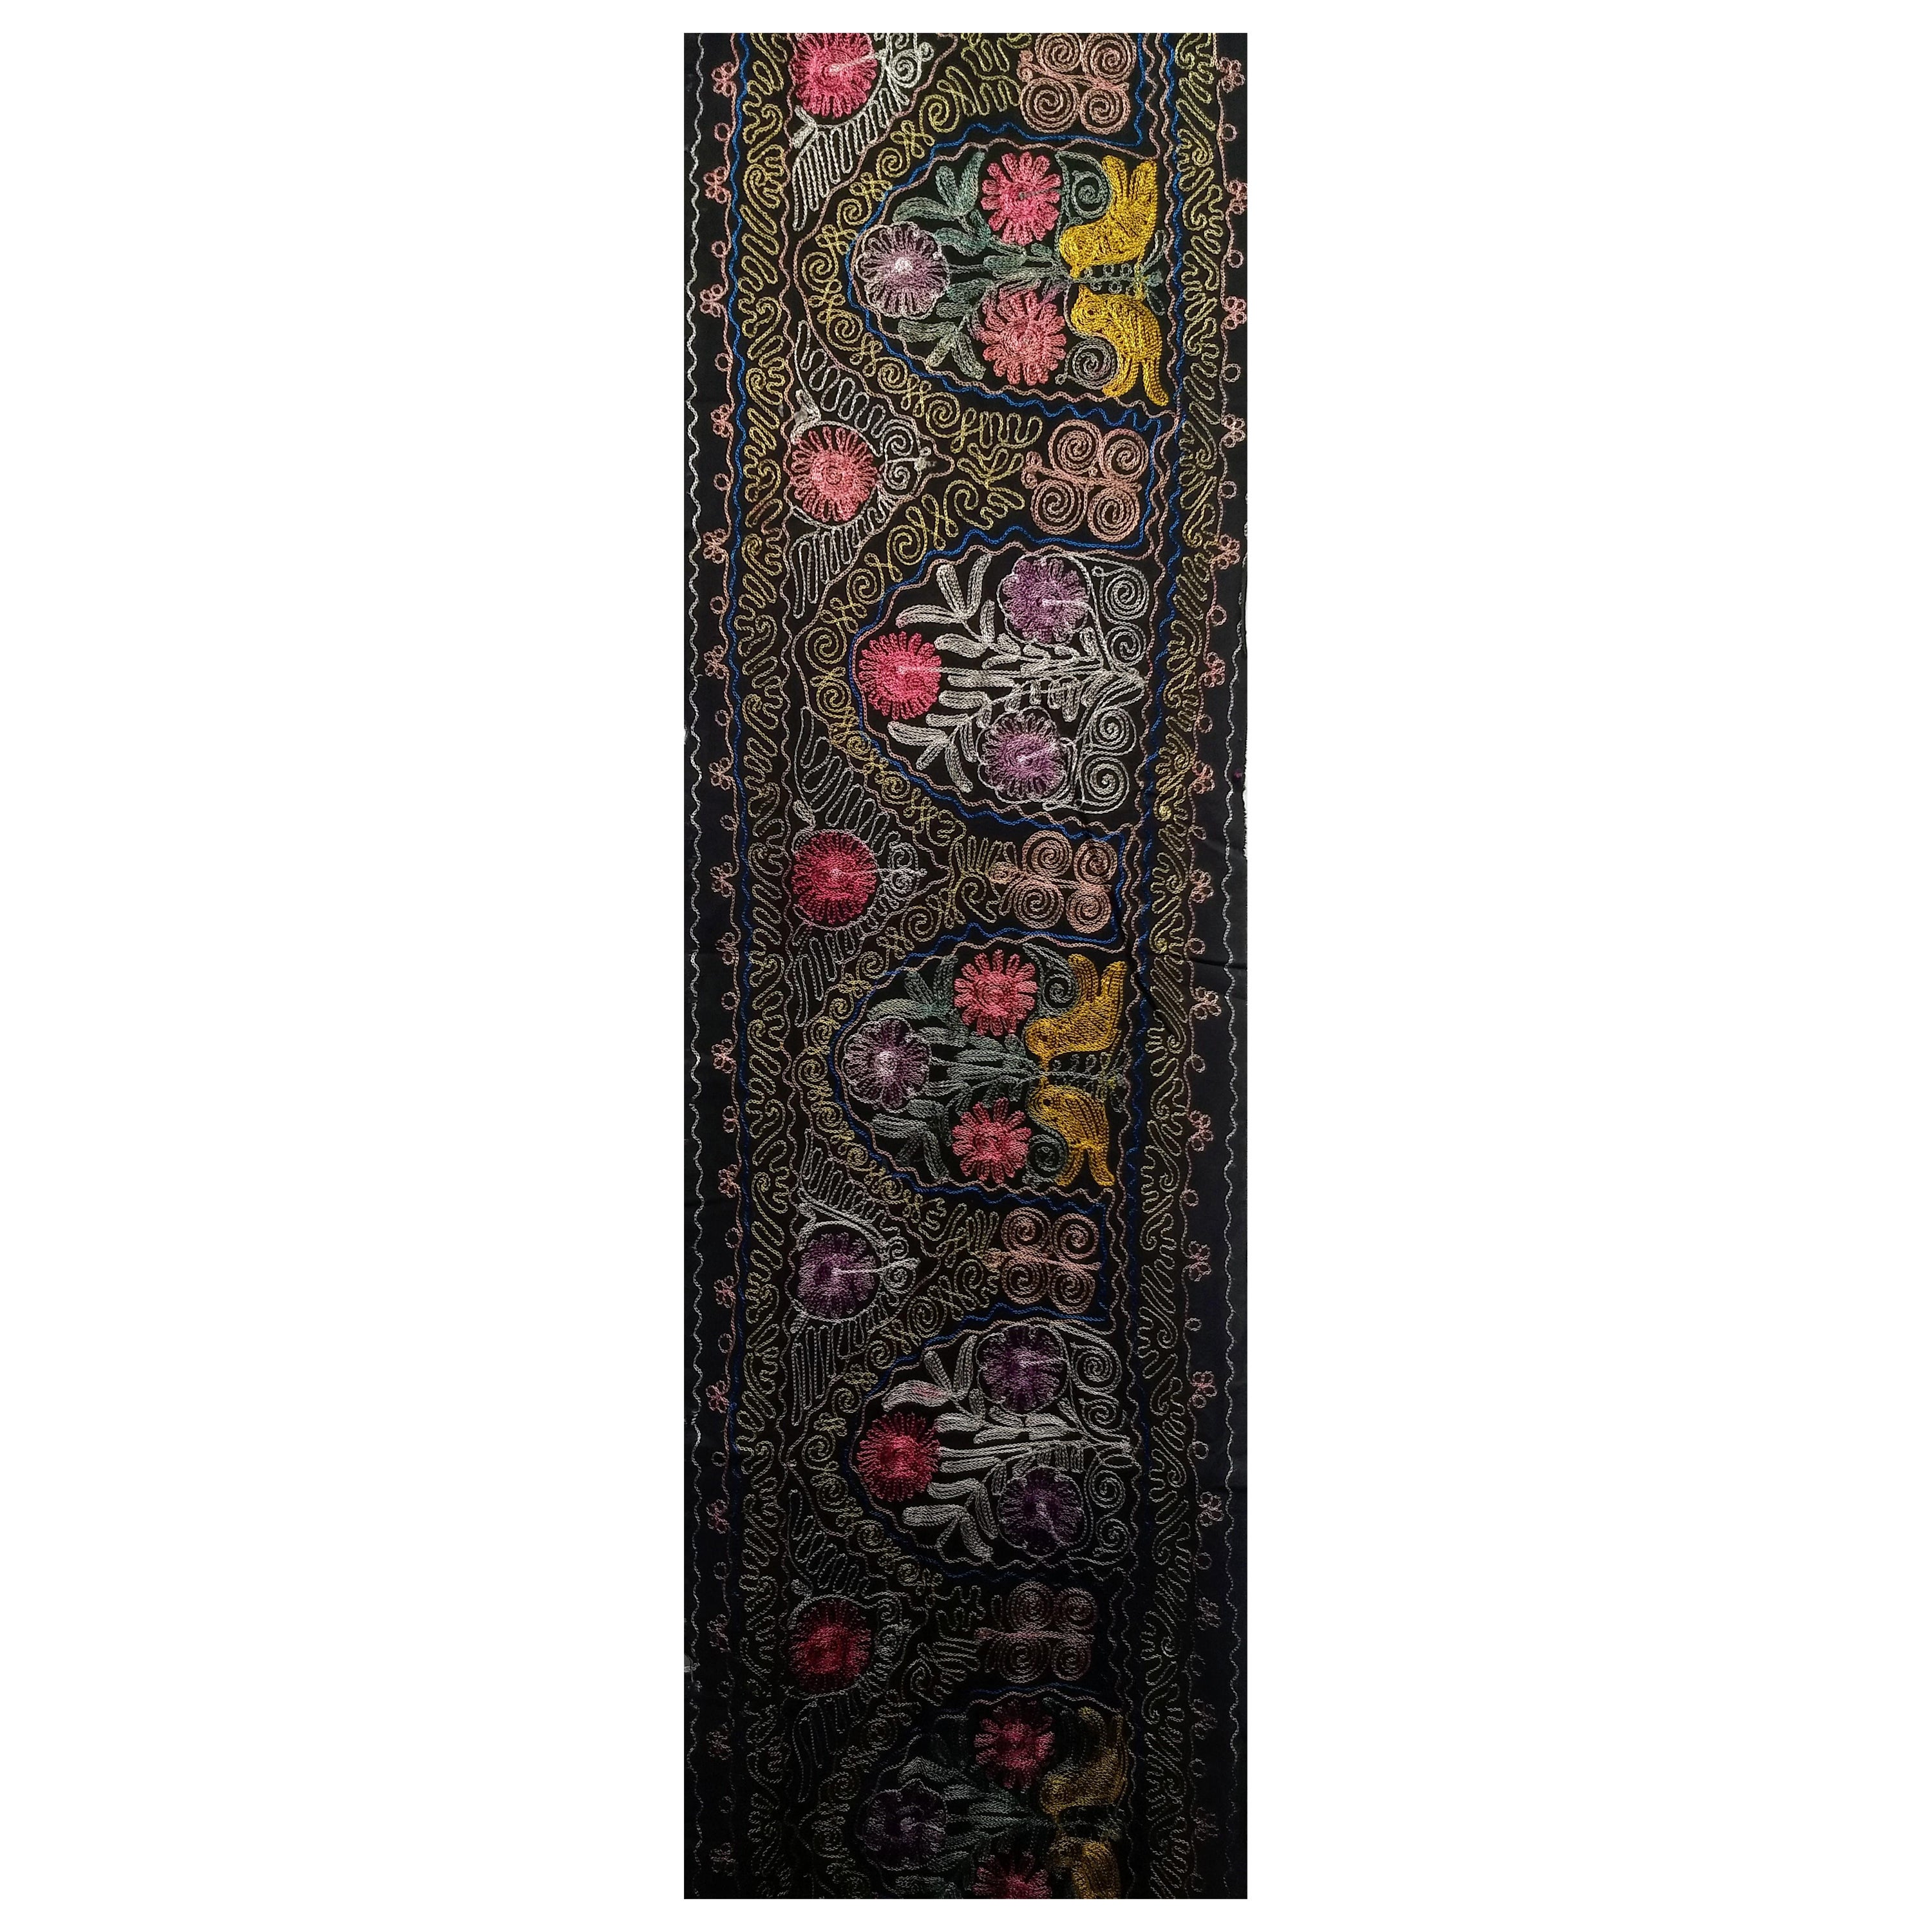  Handgefertigte Vintage-Suzani-Seidenstickerei aus Usbekistan in Zentralasien mit schwarzem Baumwollgrund und Seidenmustern in Schwarz, Blau, Grün, Lila, Gelb und Rot.  Das Design jedes Paneels besteht aus fein seidengestickten Blumenmustern in